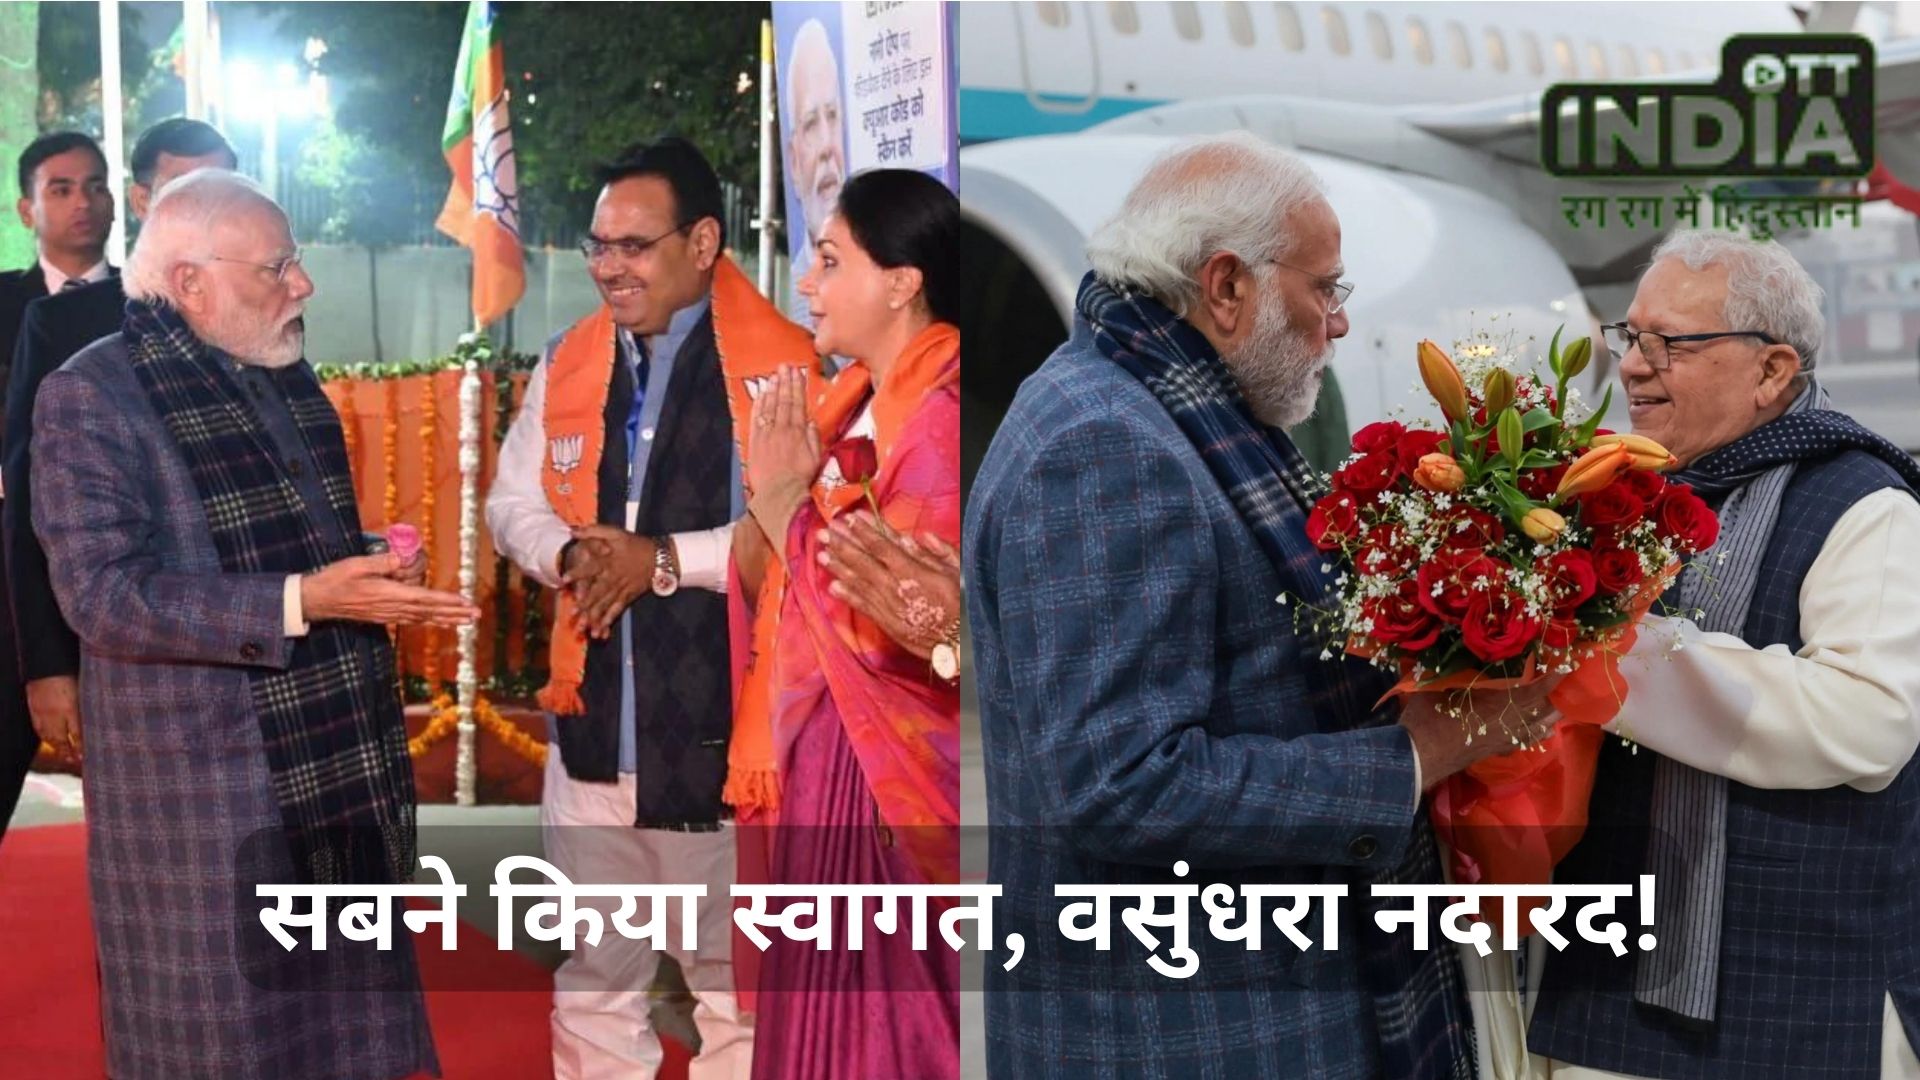 Modi in Rajasthan राजस्थान में मोदी विधायकों को जीत का कौनसा मूल मंत्र दे रहे हैं?